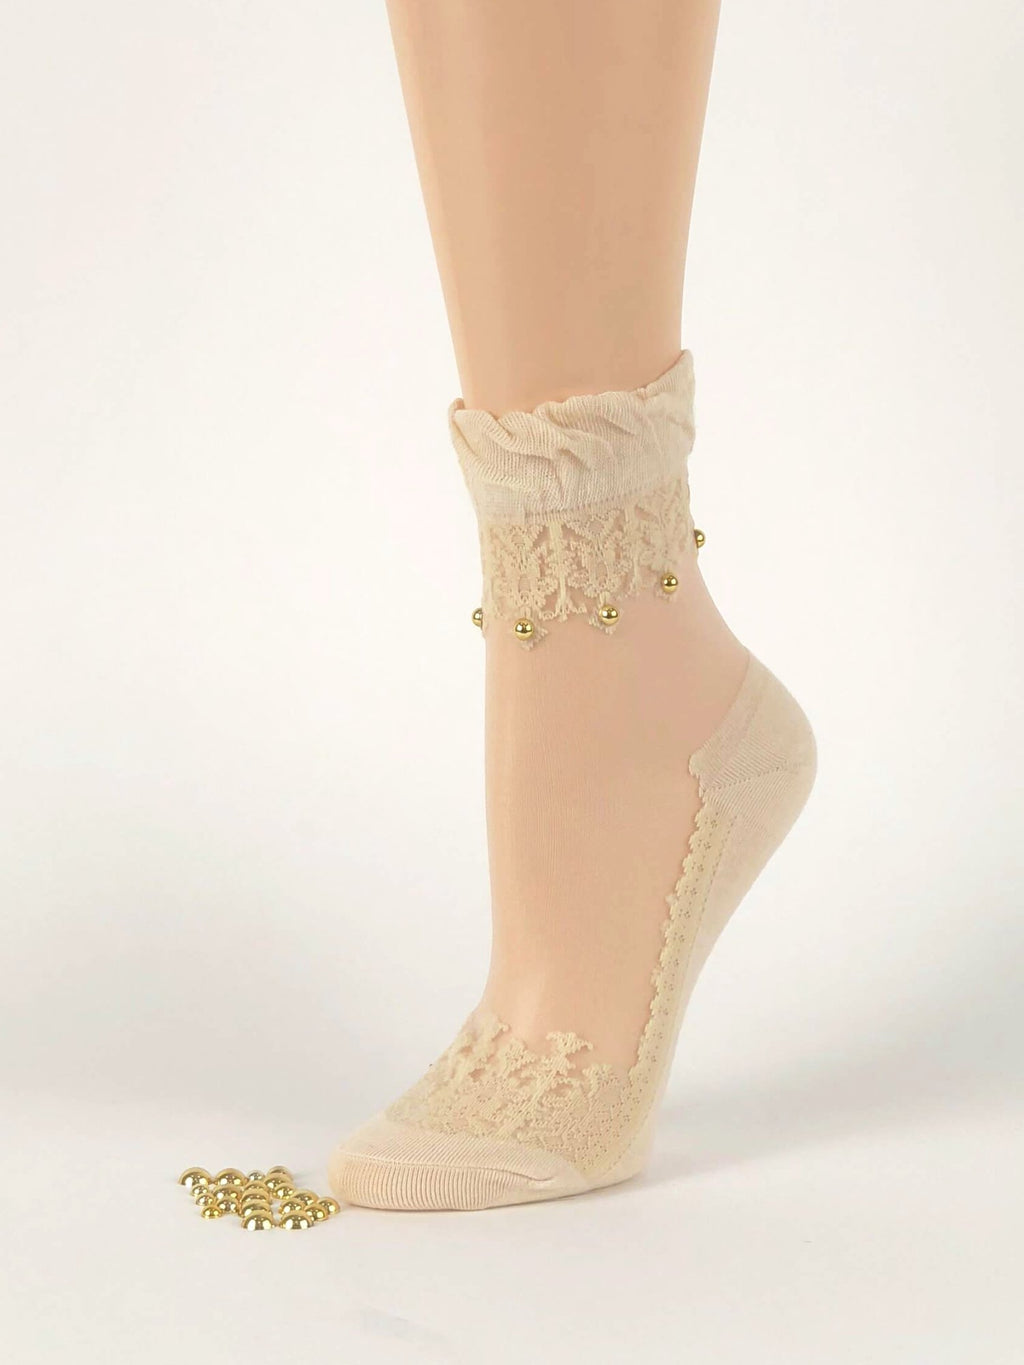 Pearled Skin Sheer Socks - Global Trendz Fashion®